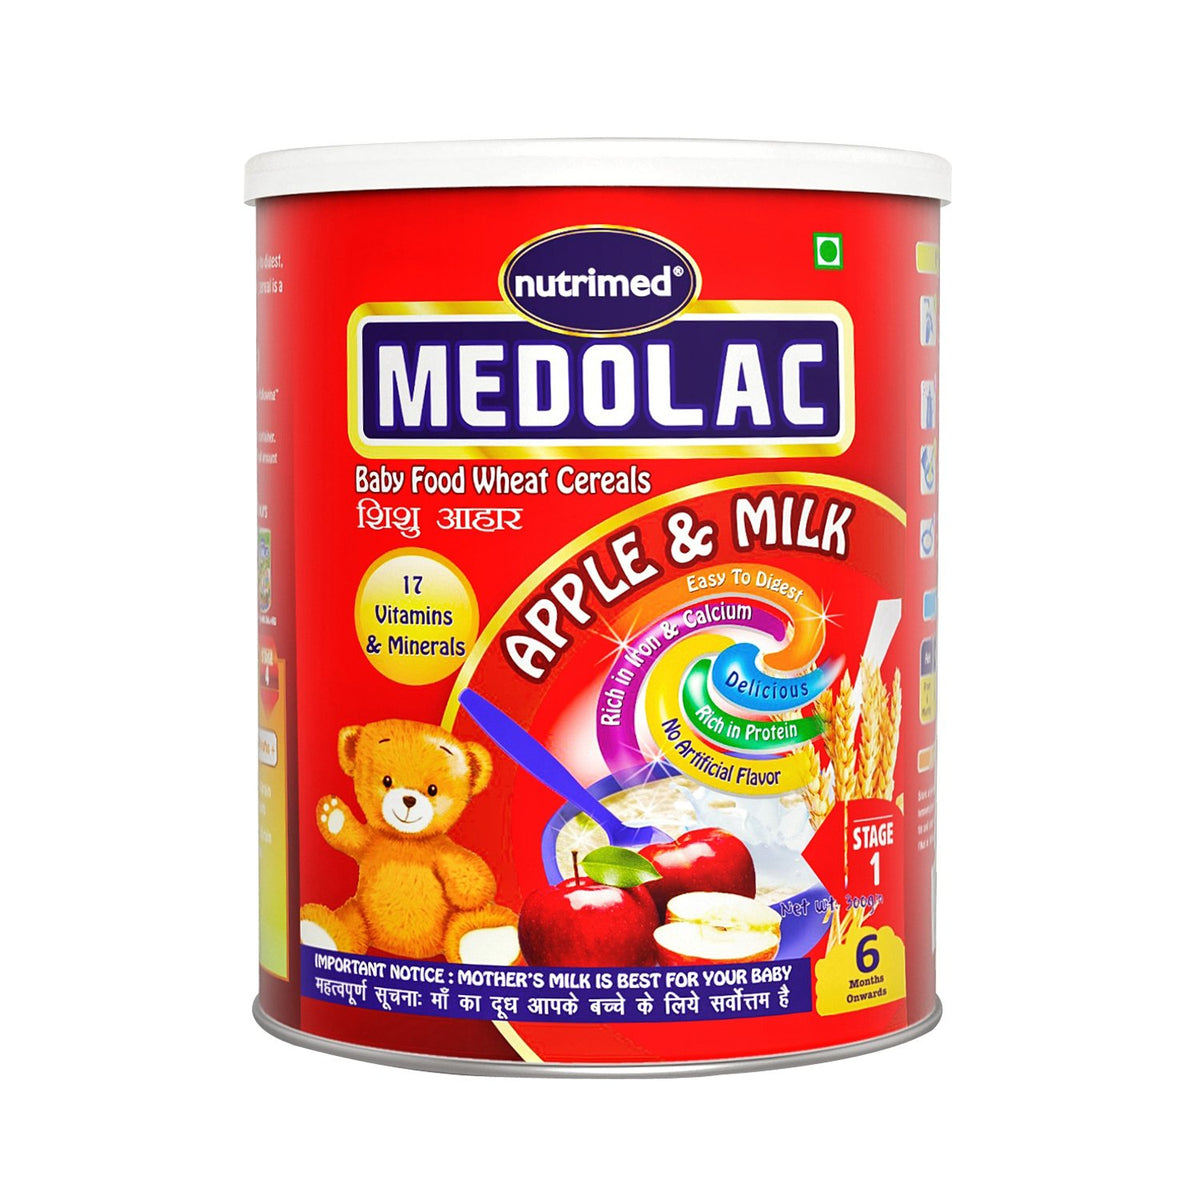 Medolac Apple & Milk